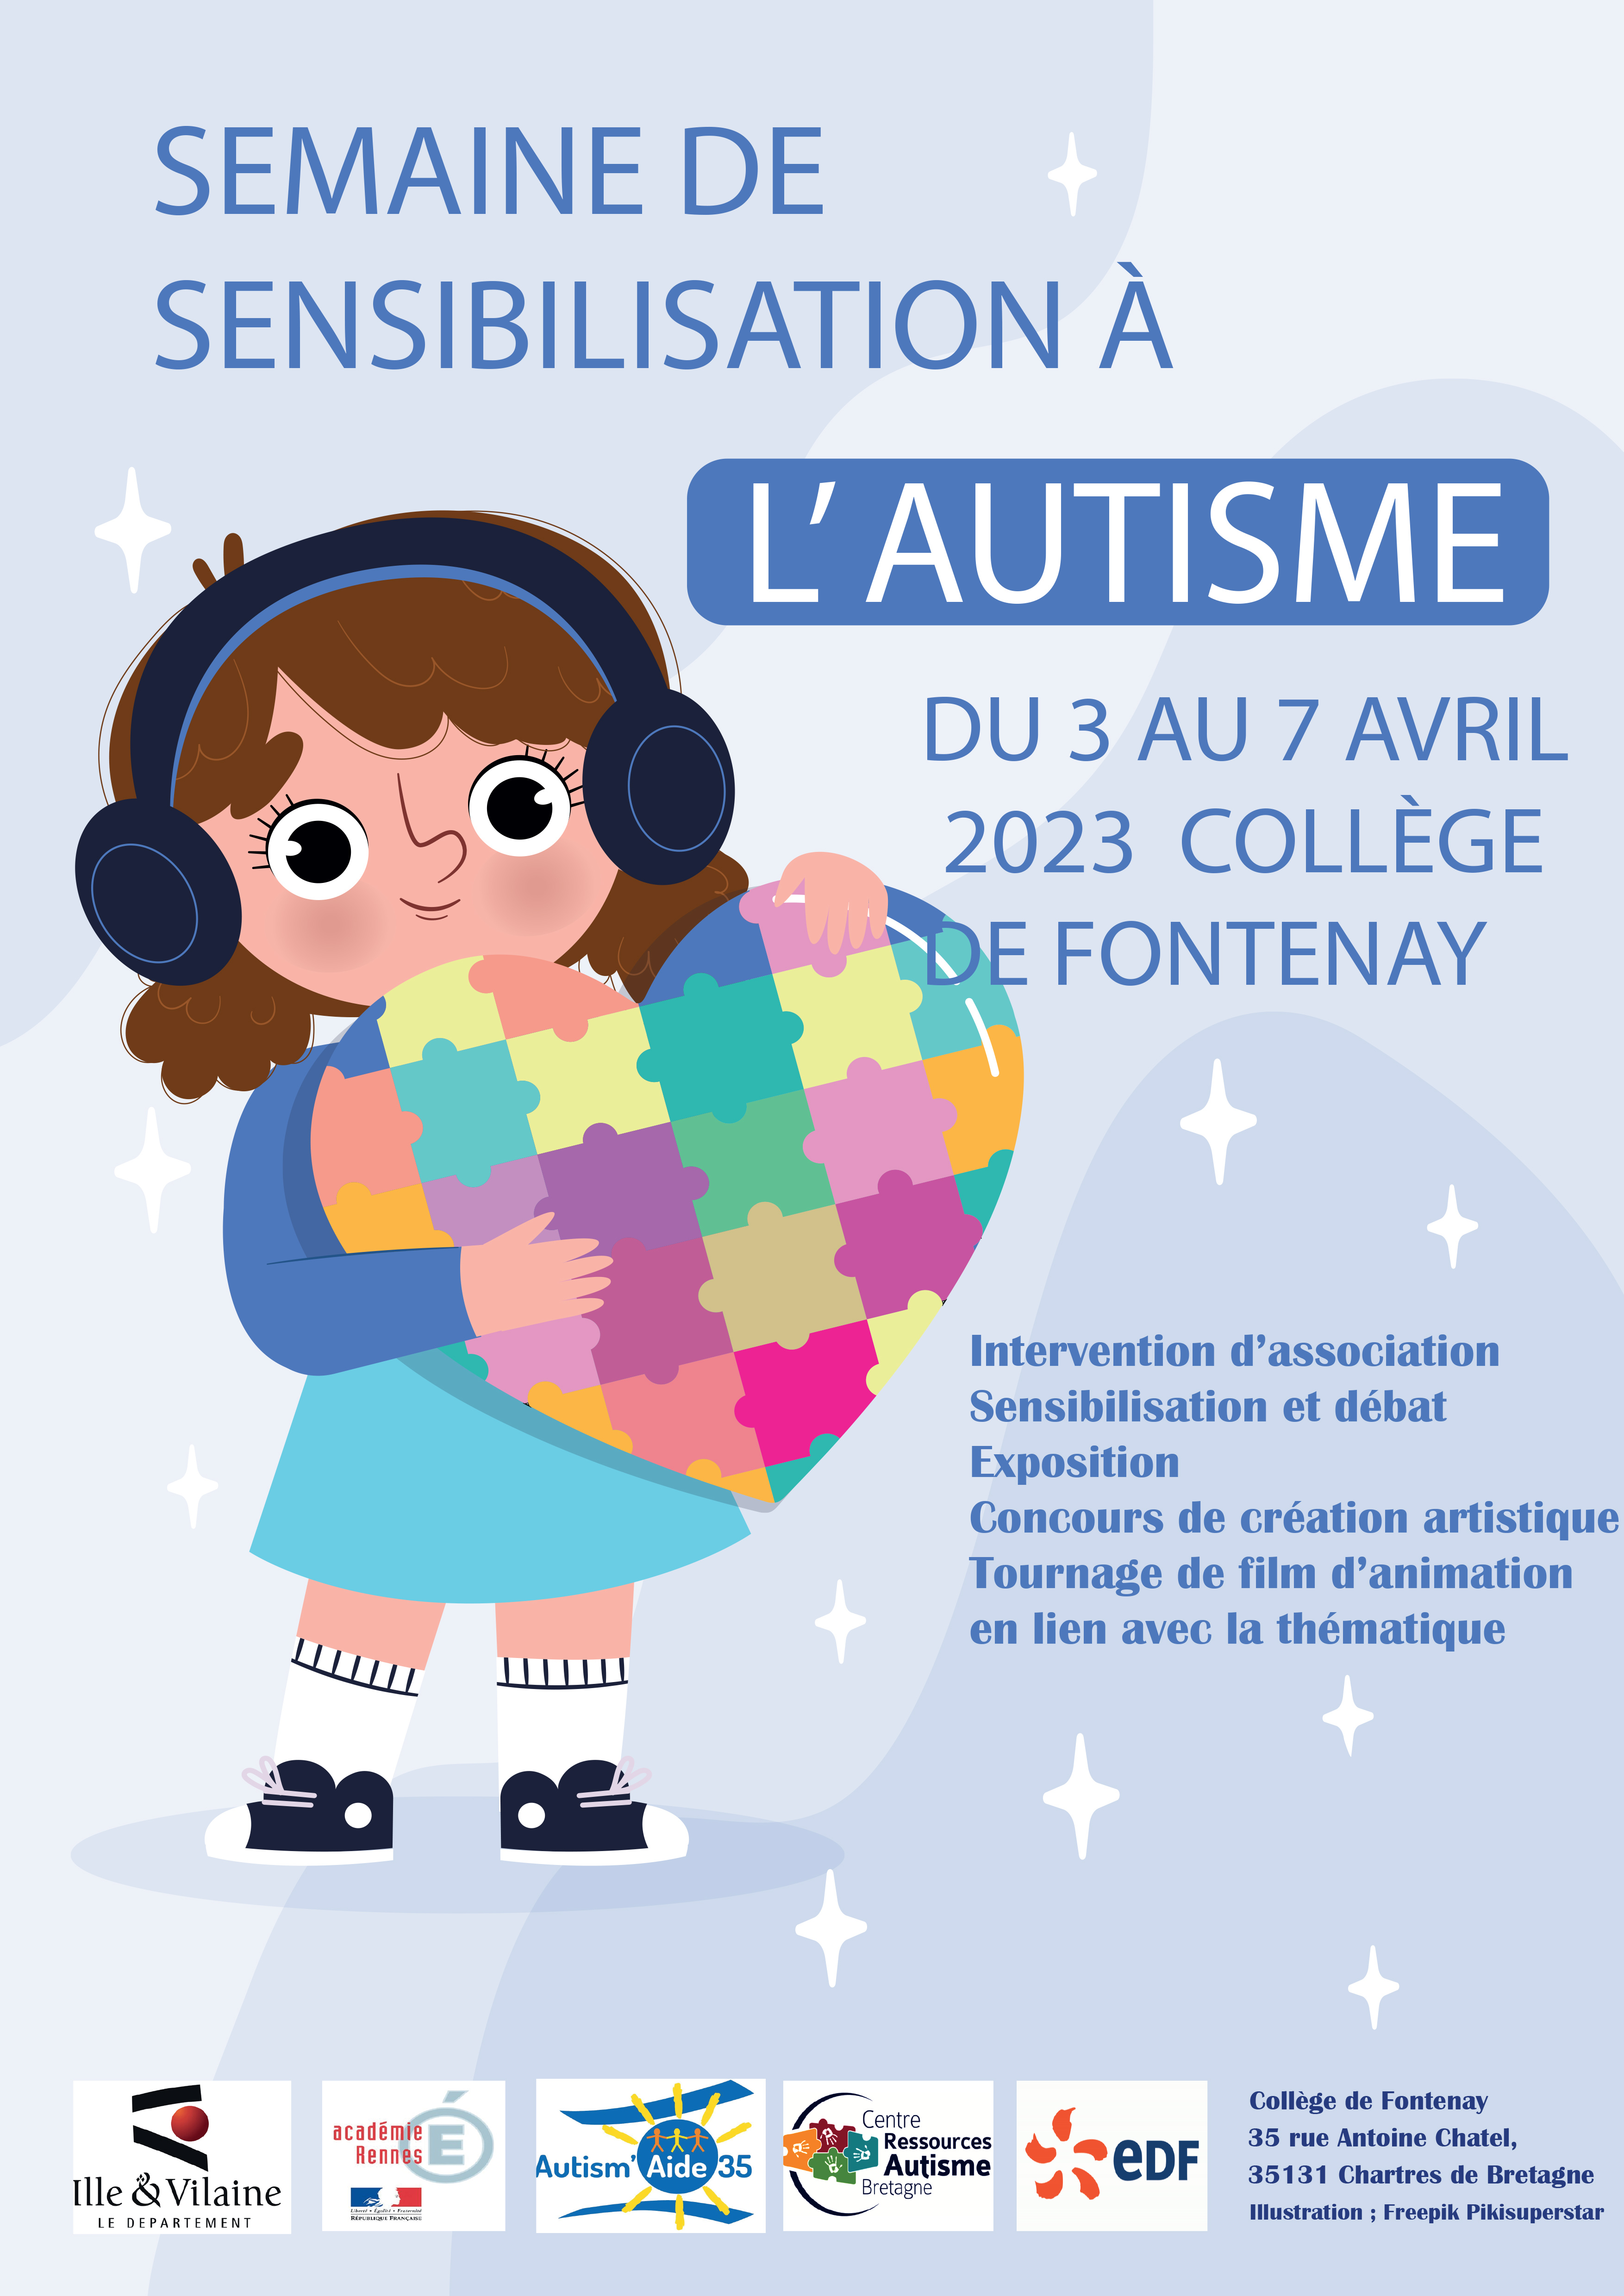 Semaine de sensibilisation à l'autisme au collège - Collège de Fontenay